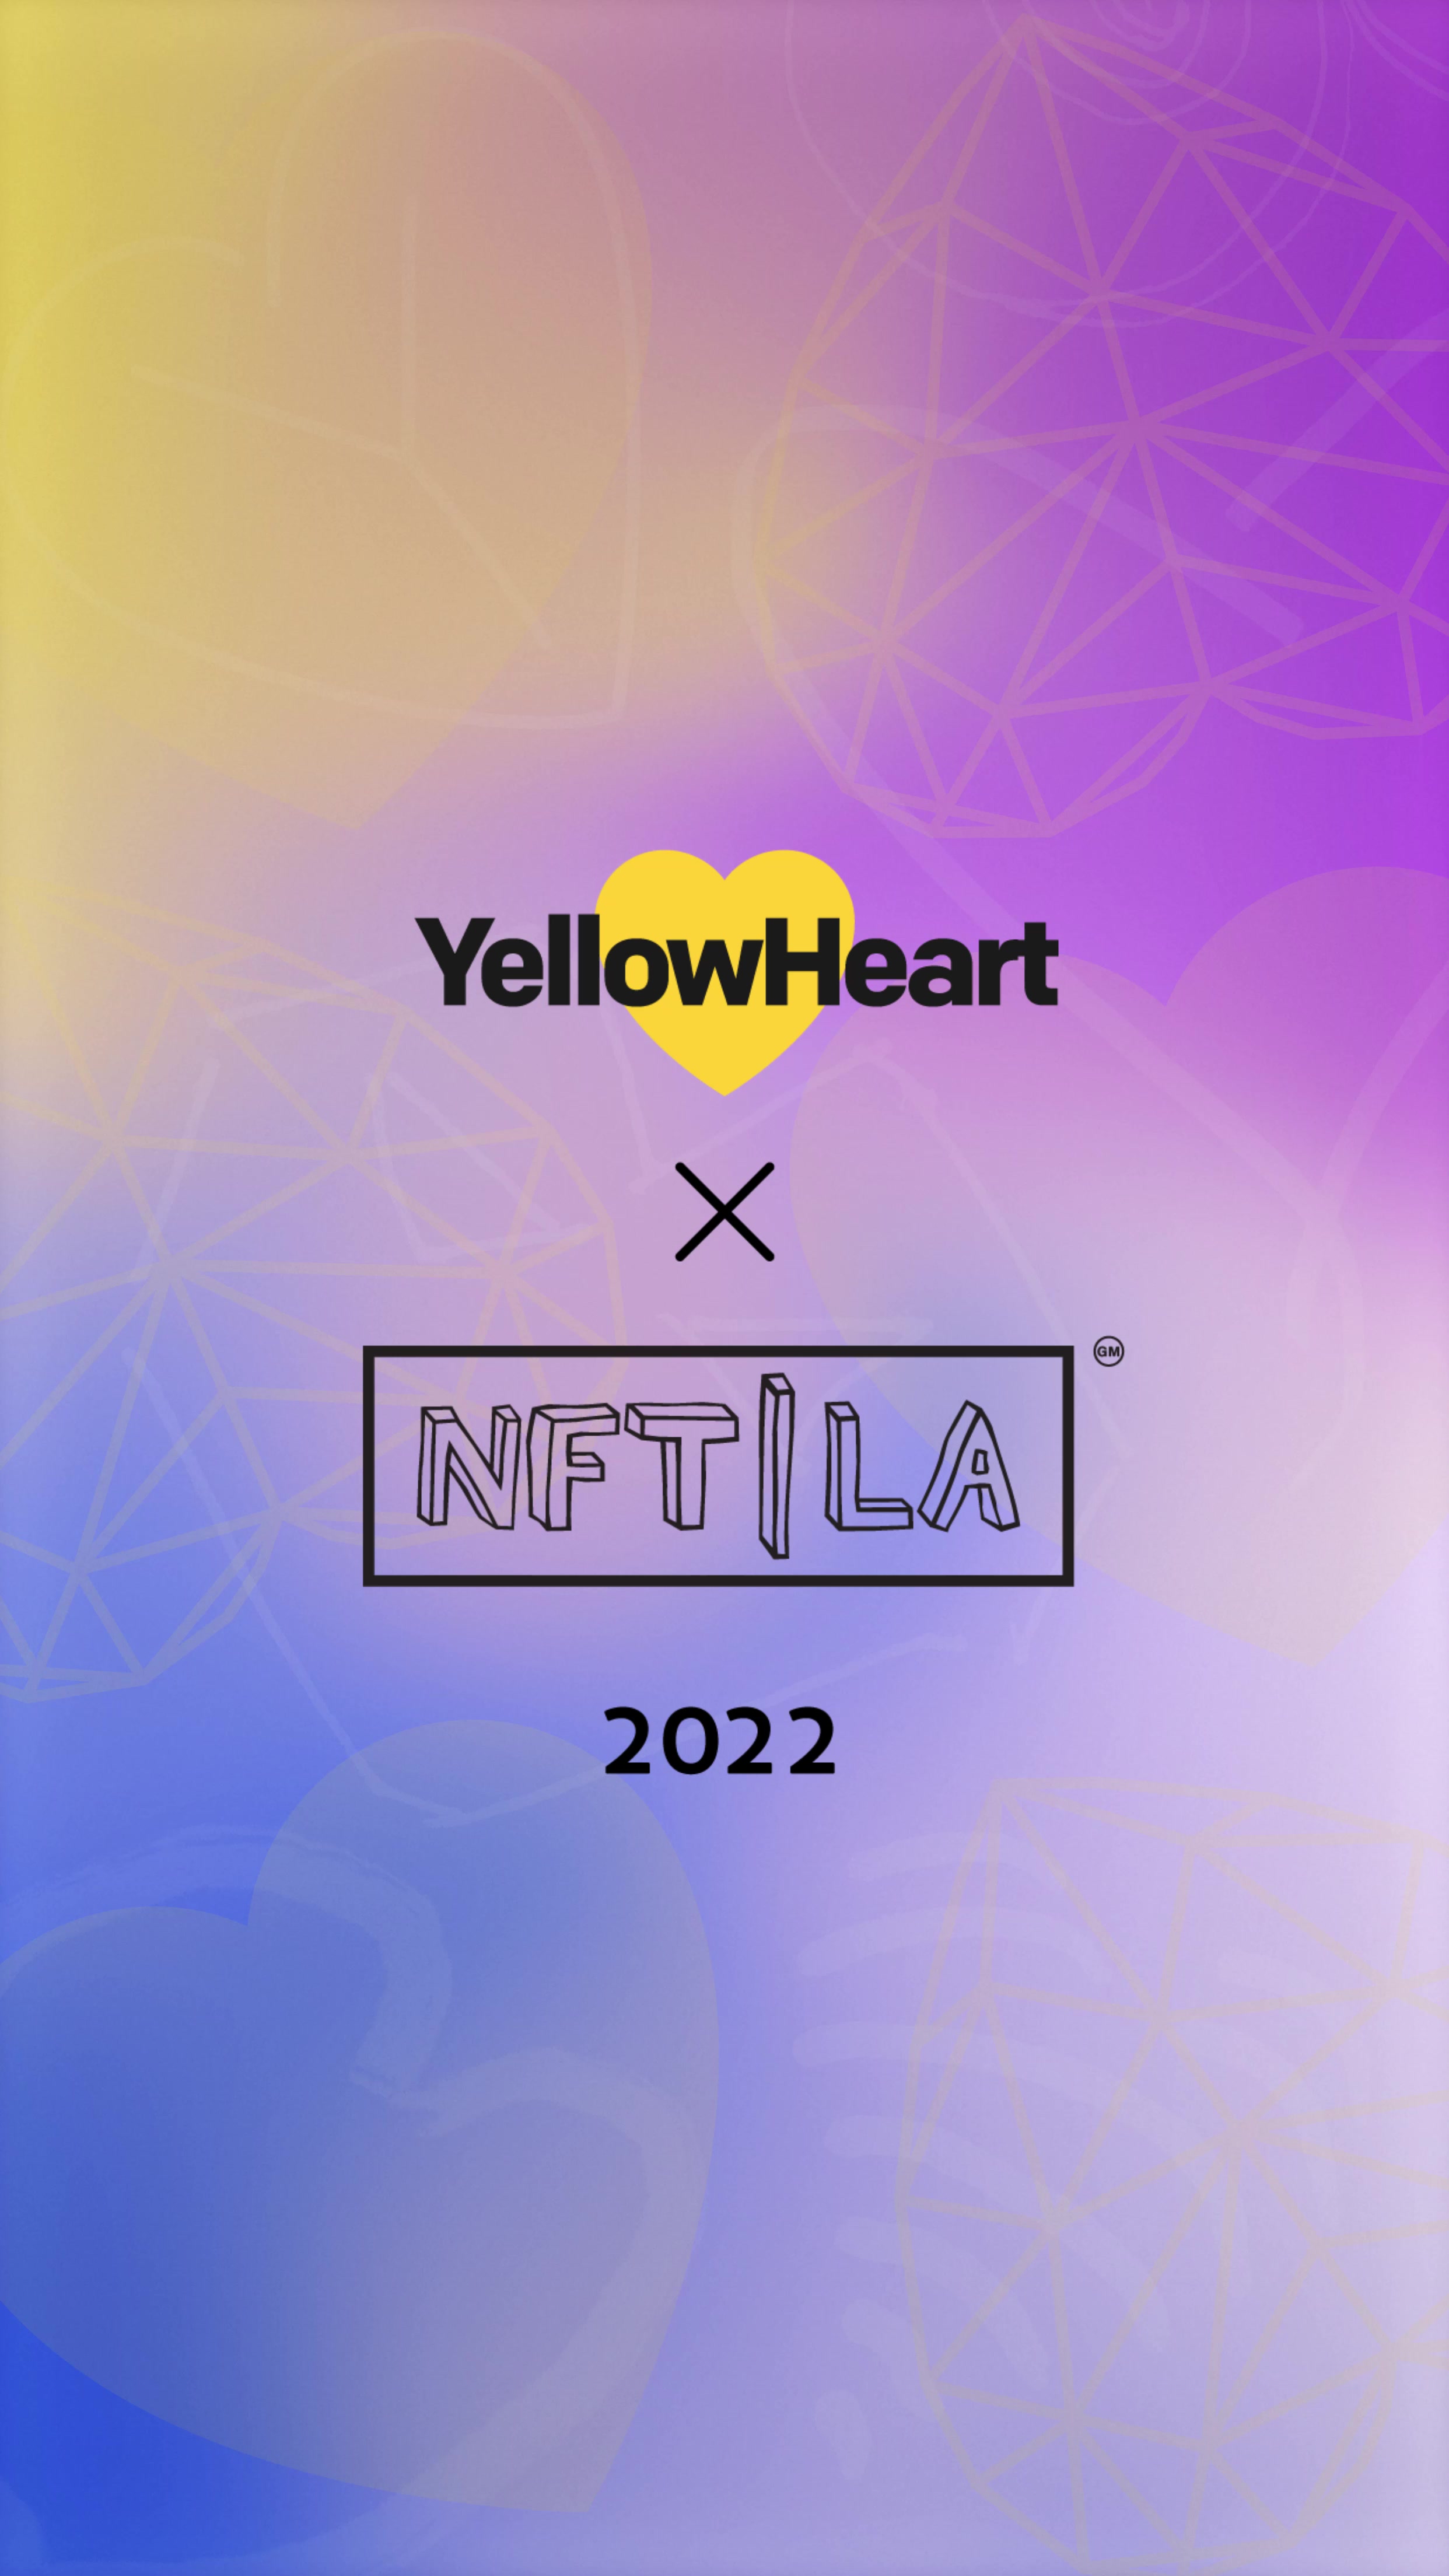 YellowHeart x NFT LA 2022